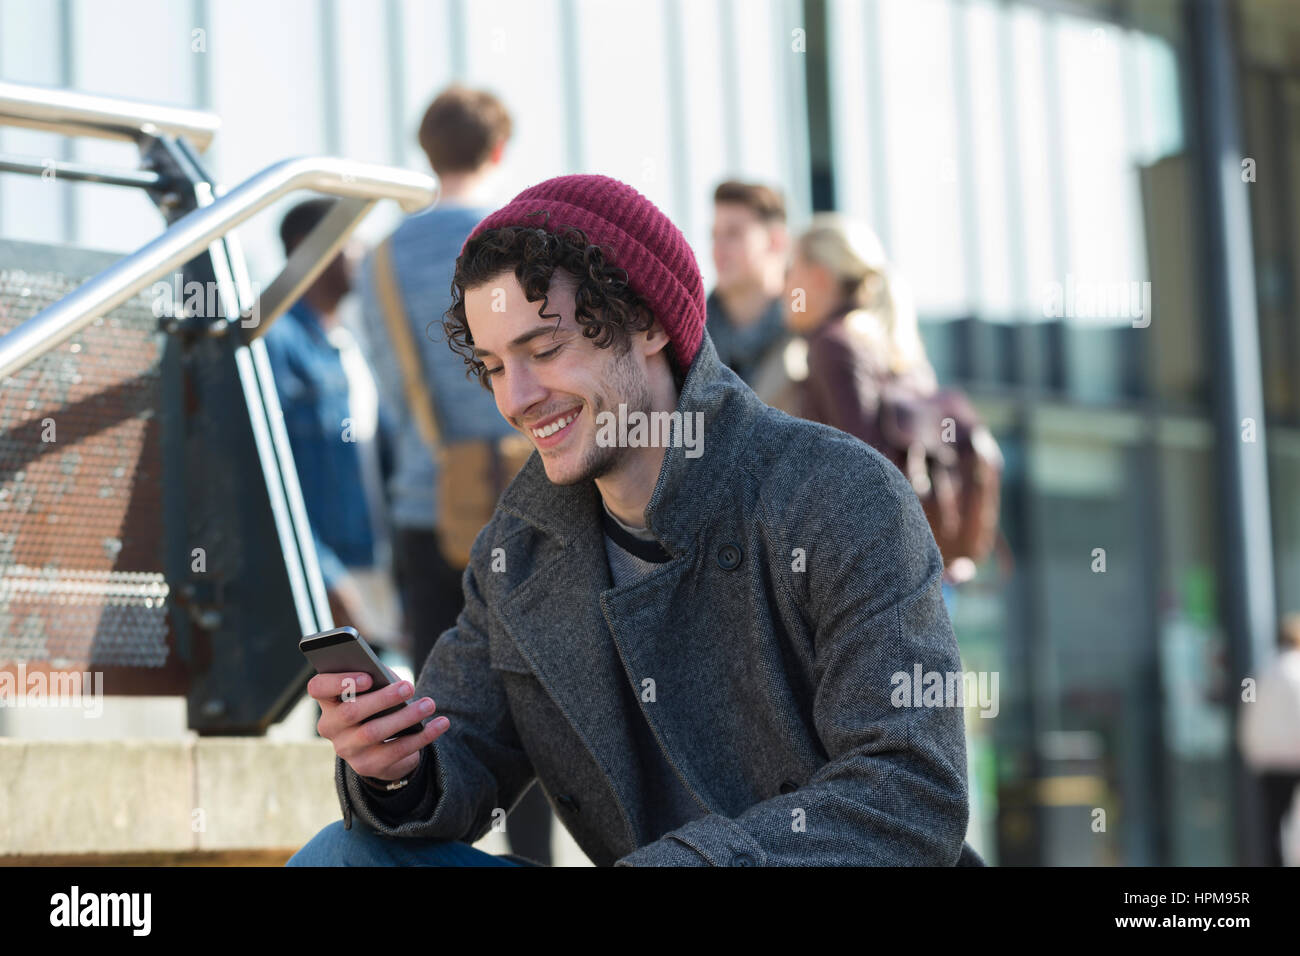 Ein glücklicher junge Mann lächelt, als er sein Handy in der Stadt verwendet. Er steckt sich Warm für das kalte Wetter und trägt einen Hut. Stockfoto